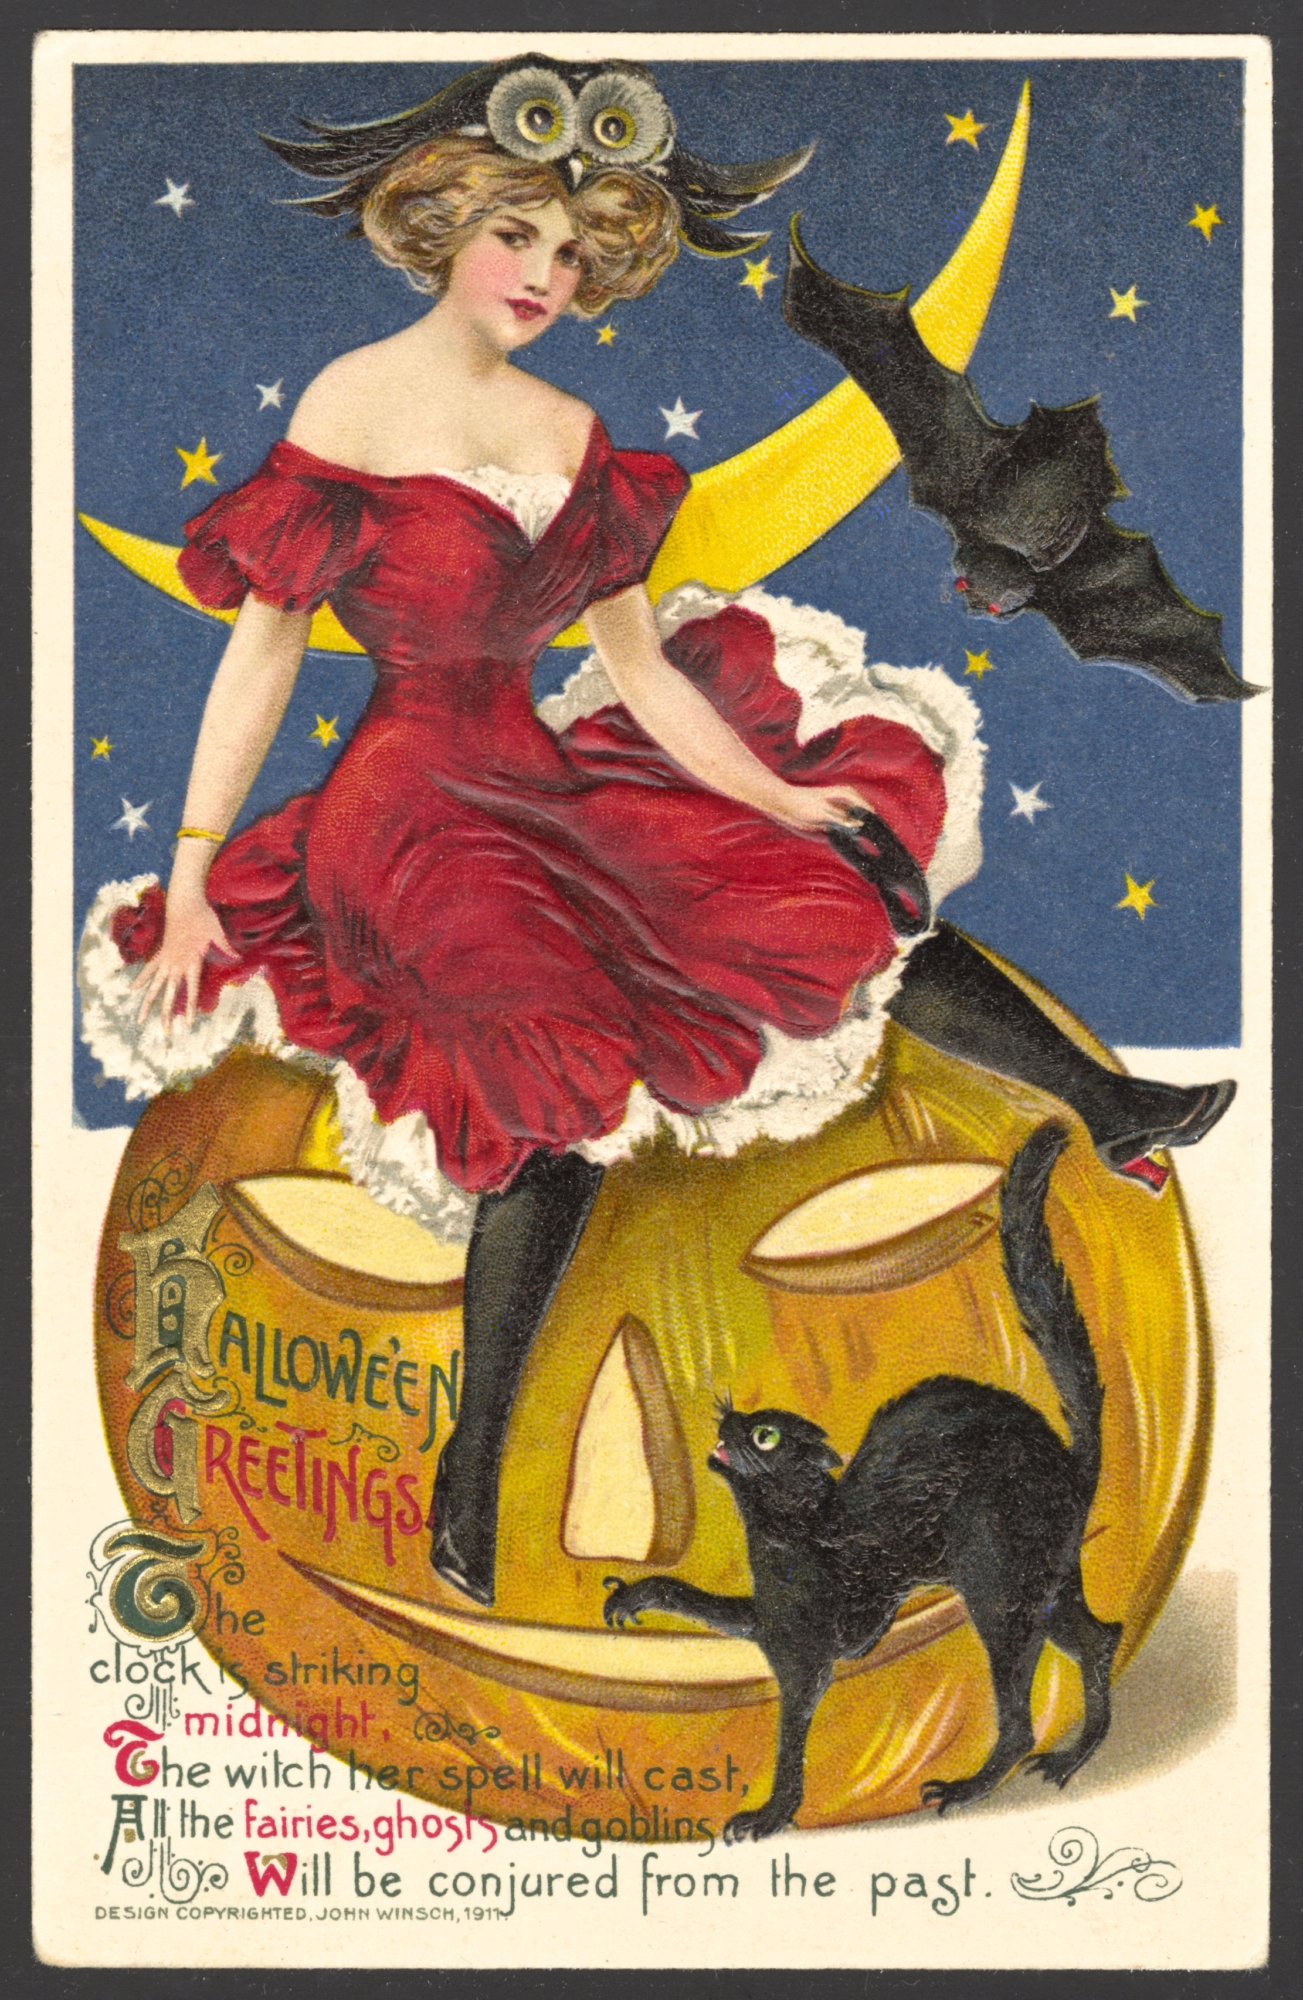 Winsch Halloween Postcard copyright 1911